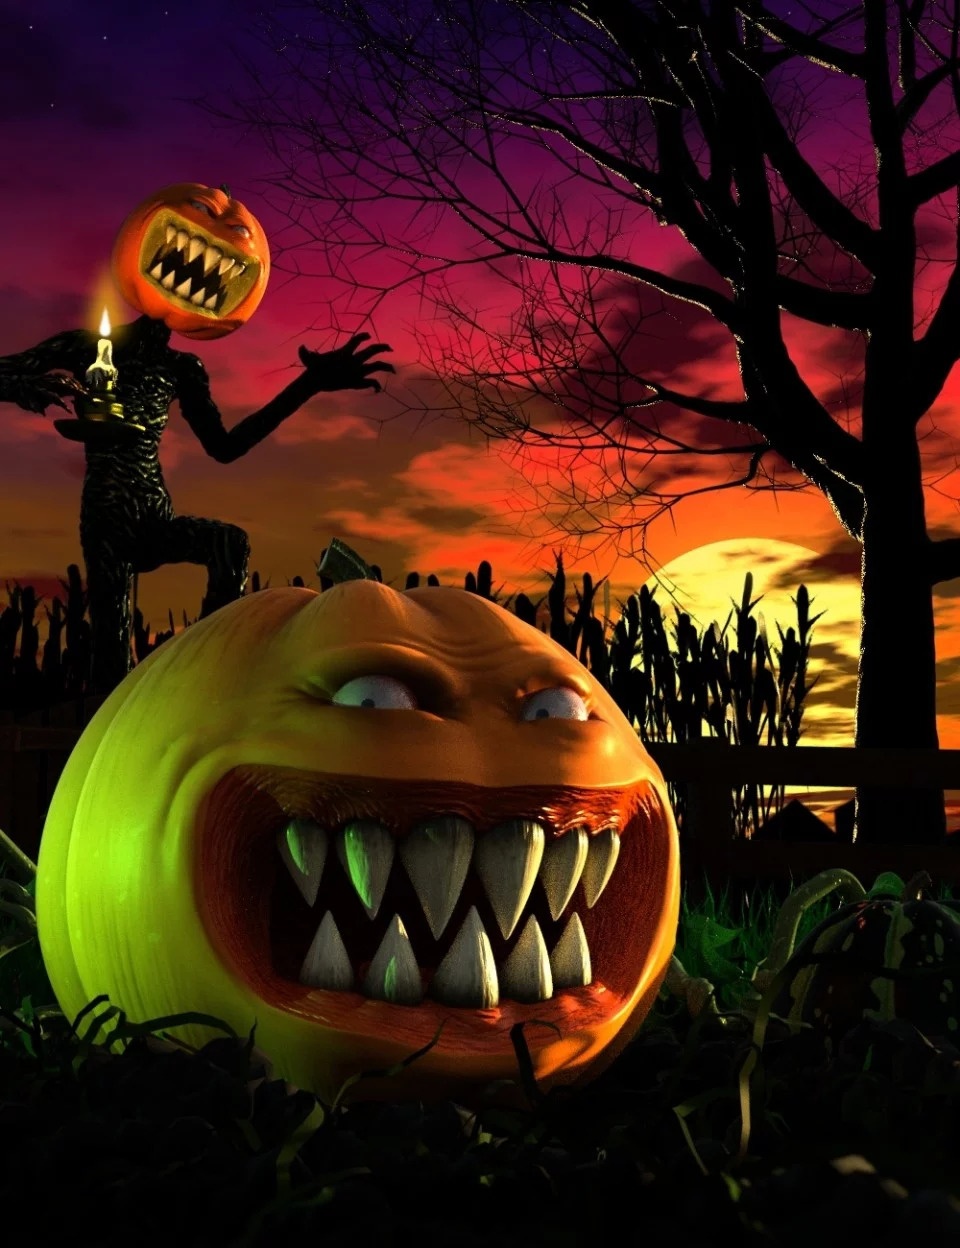 evil-pumpkin-hd-for-genesis-8-male